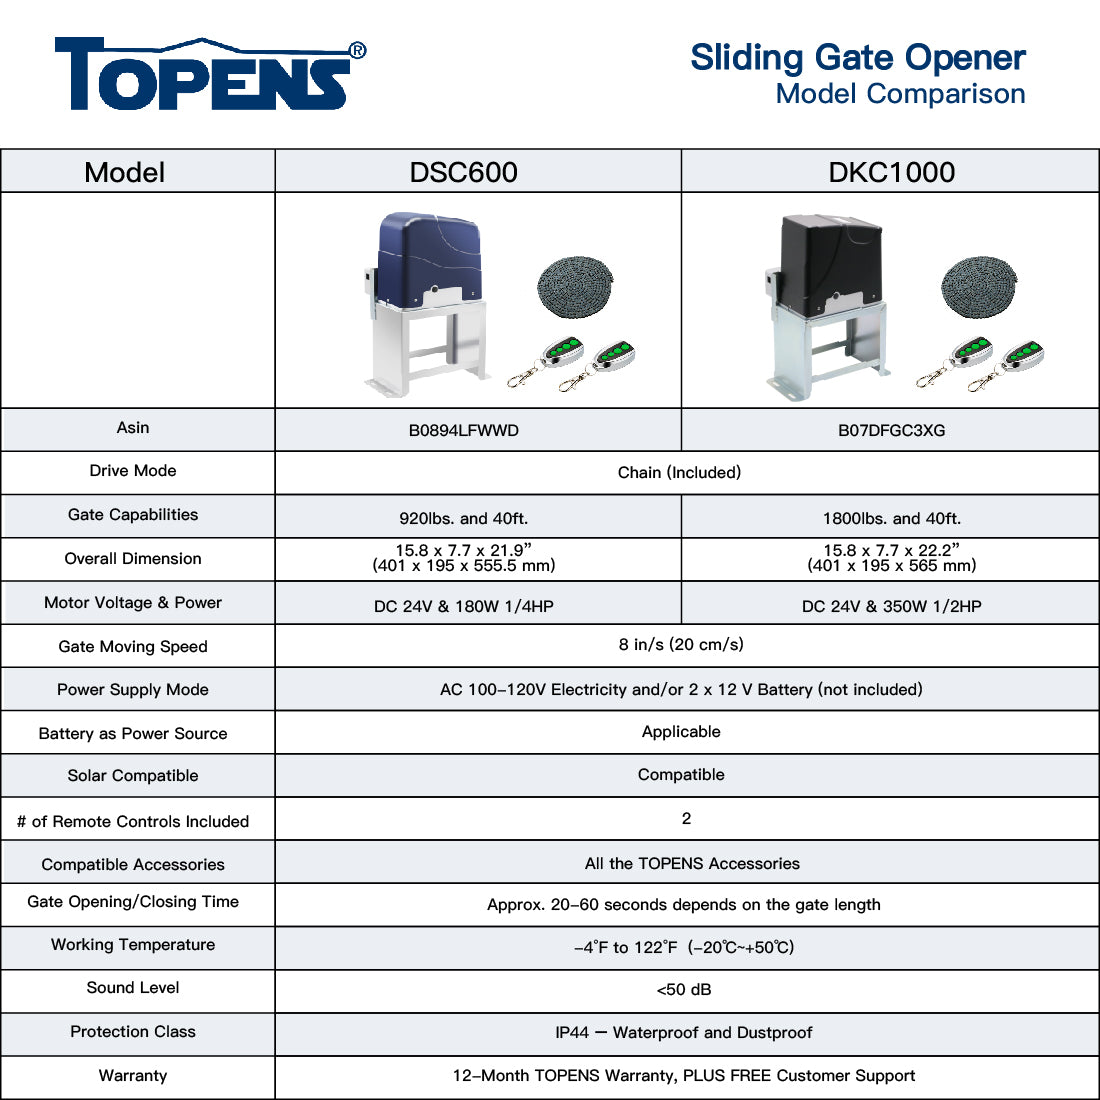 TOPENS DKC1000 Sliding Gate Opener